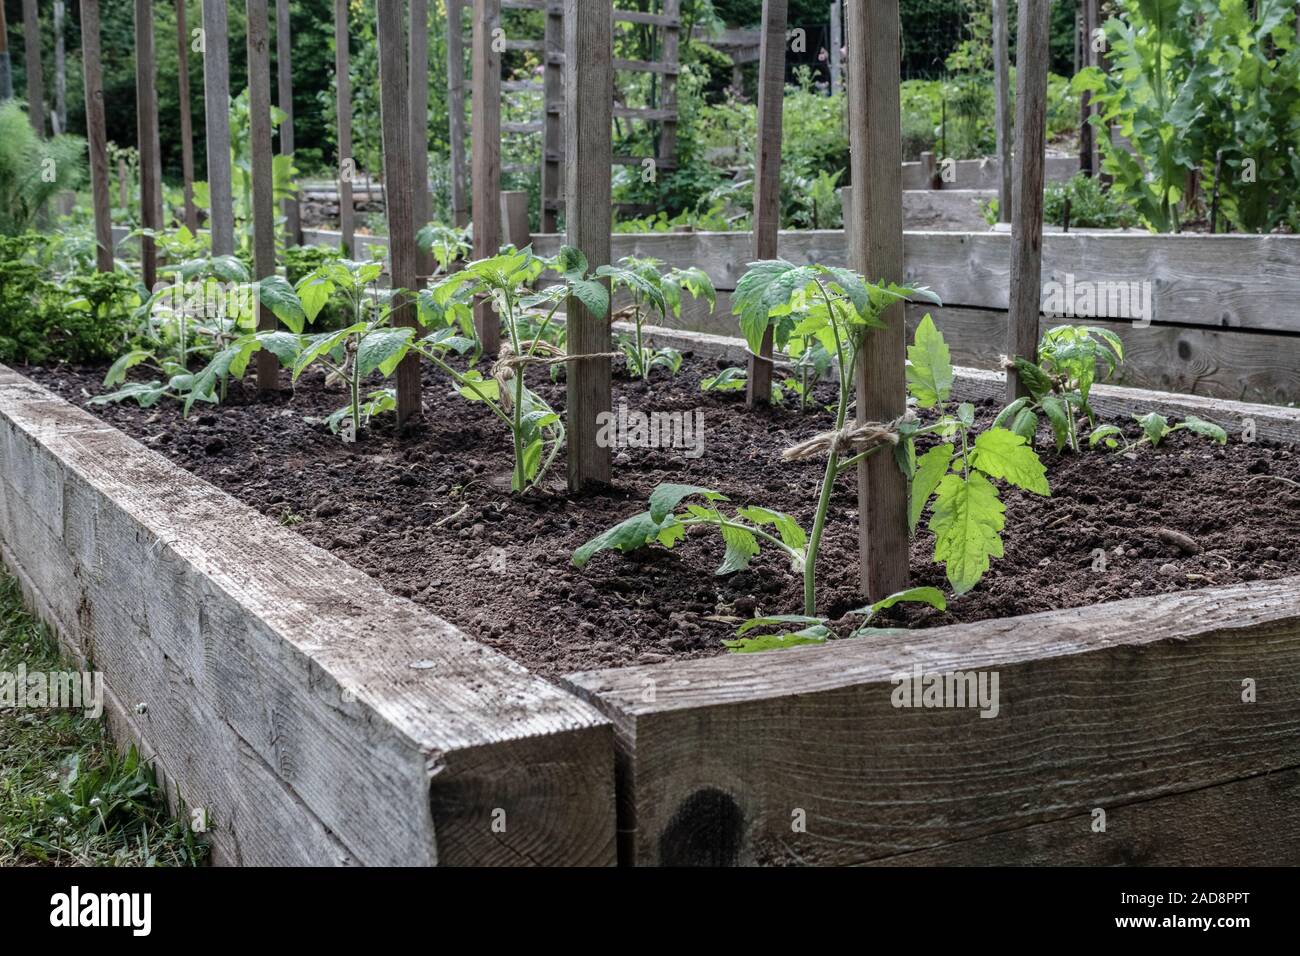 Gesunde junge Tomatenpflanzen, die jeweils zu einem hölzernen Pflock für die Unterstützung gebunden, wachsen in einem Bett in einem Hinterhof essen Garten (British Columbia). Stockfoto